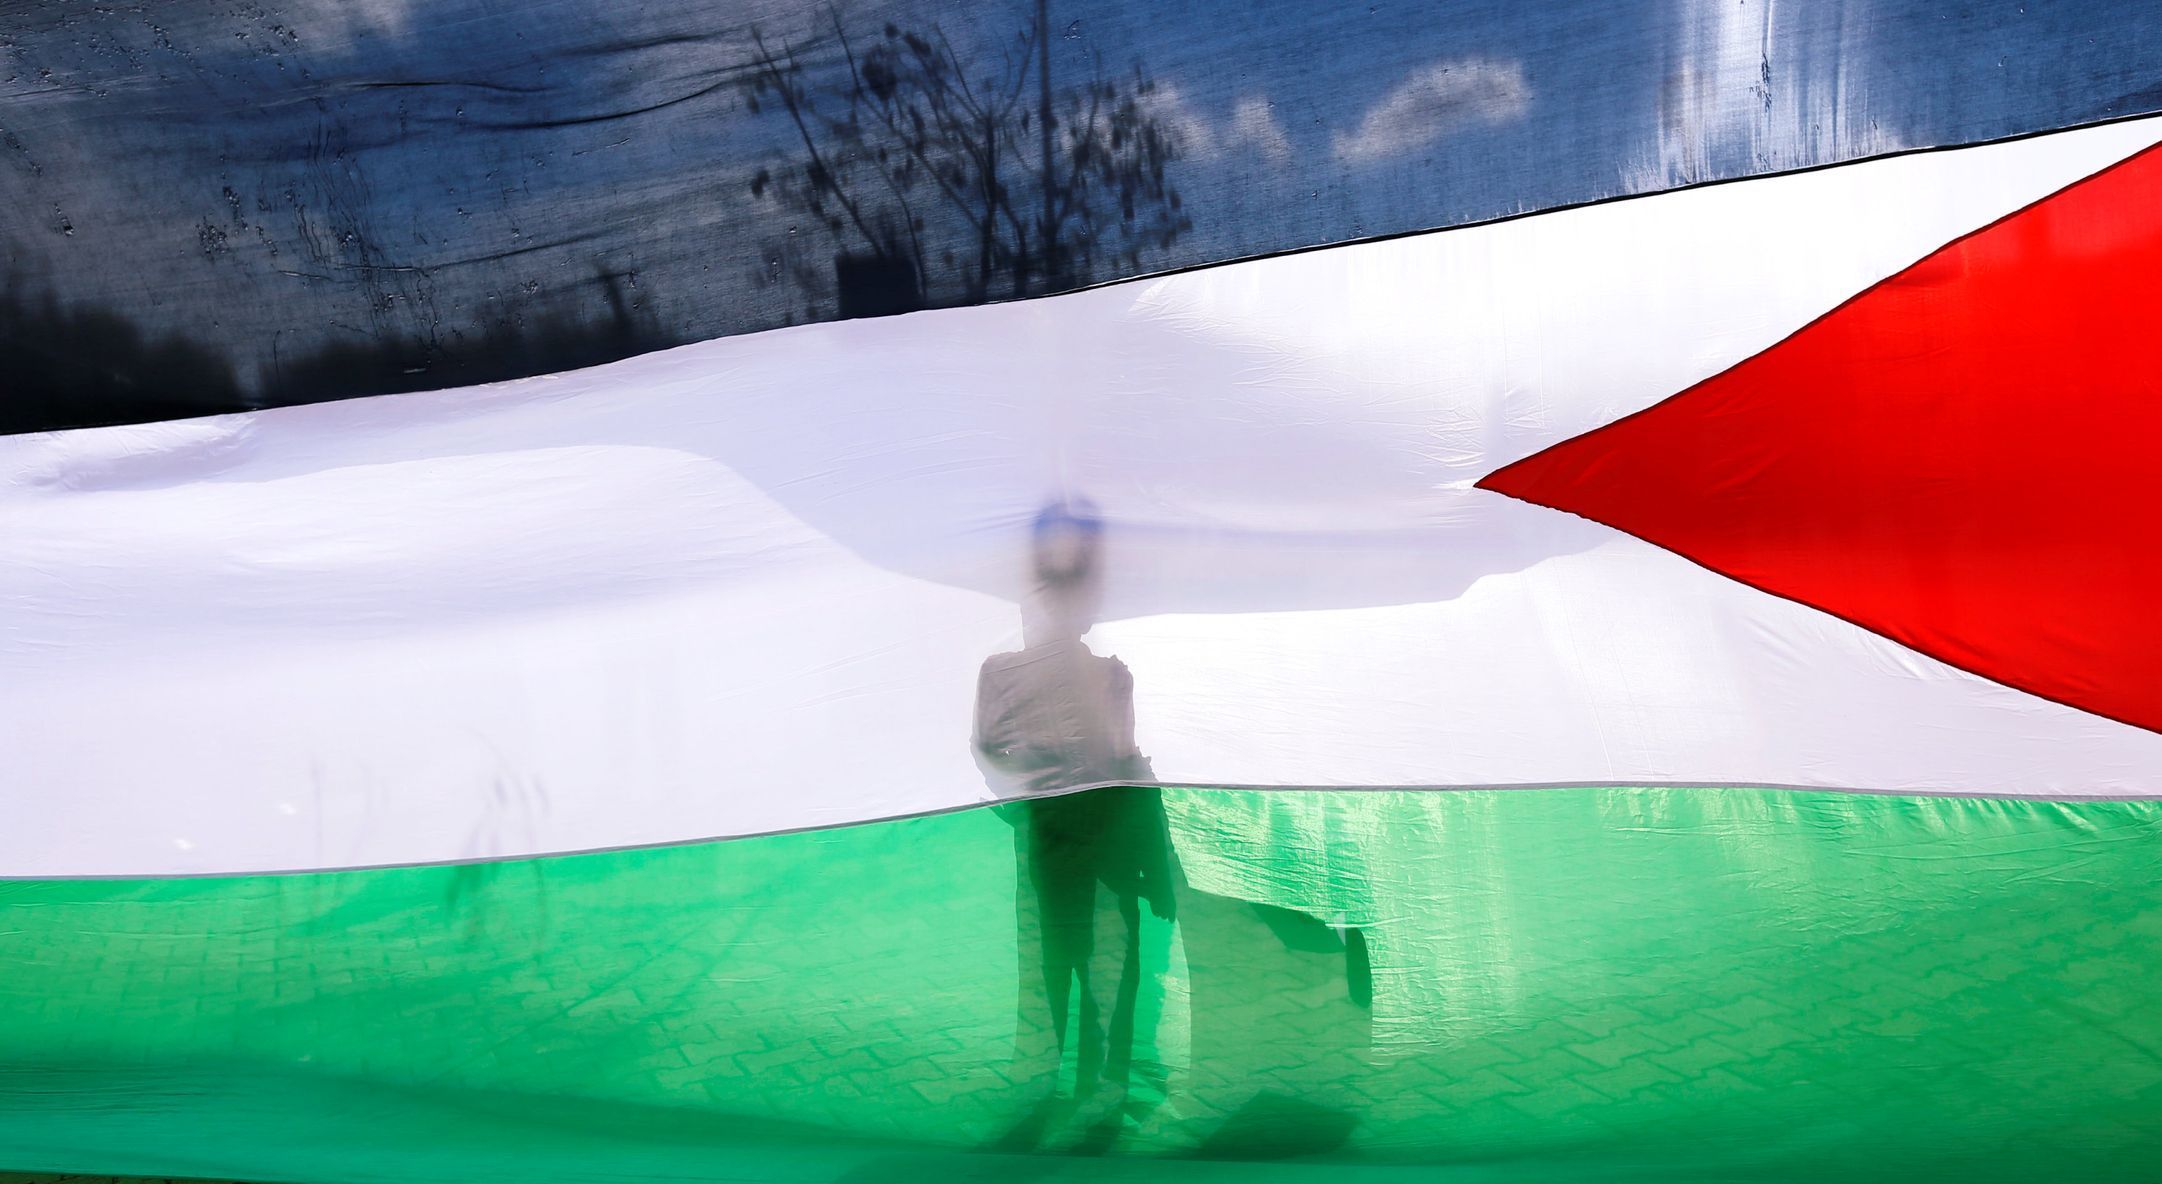 Protesty kvůli otevření americké ambasády v Jeruzalémě. Palestinská vlajka.